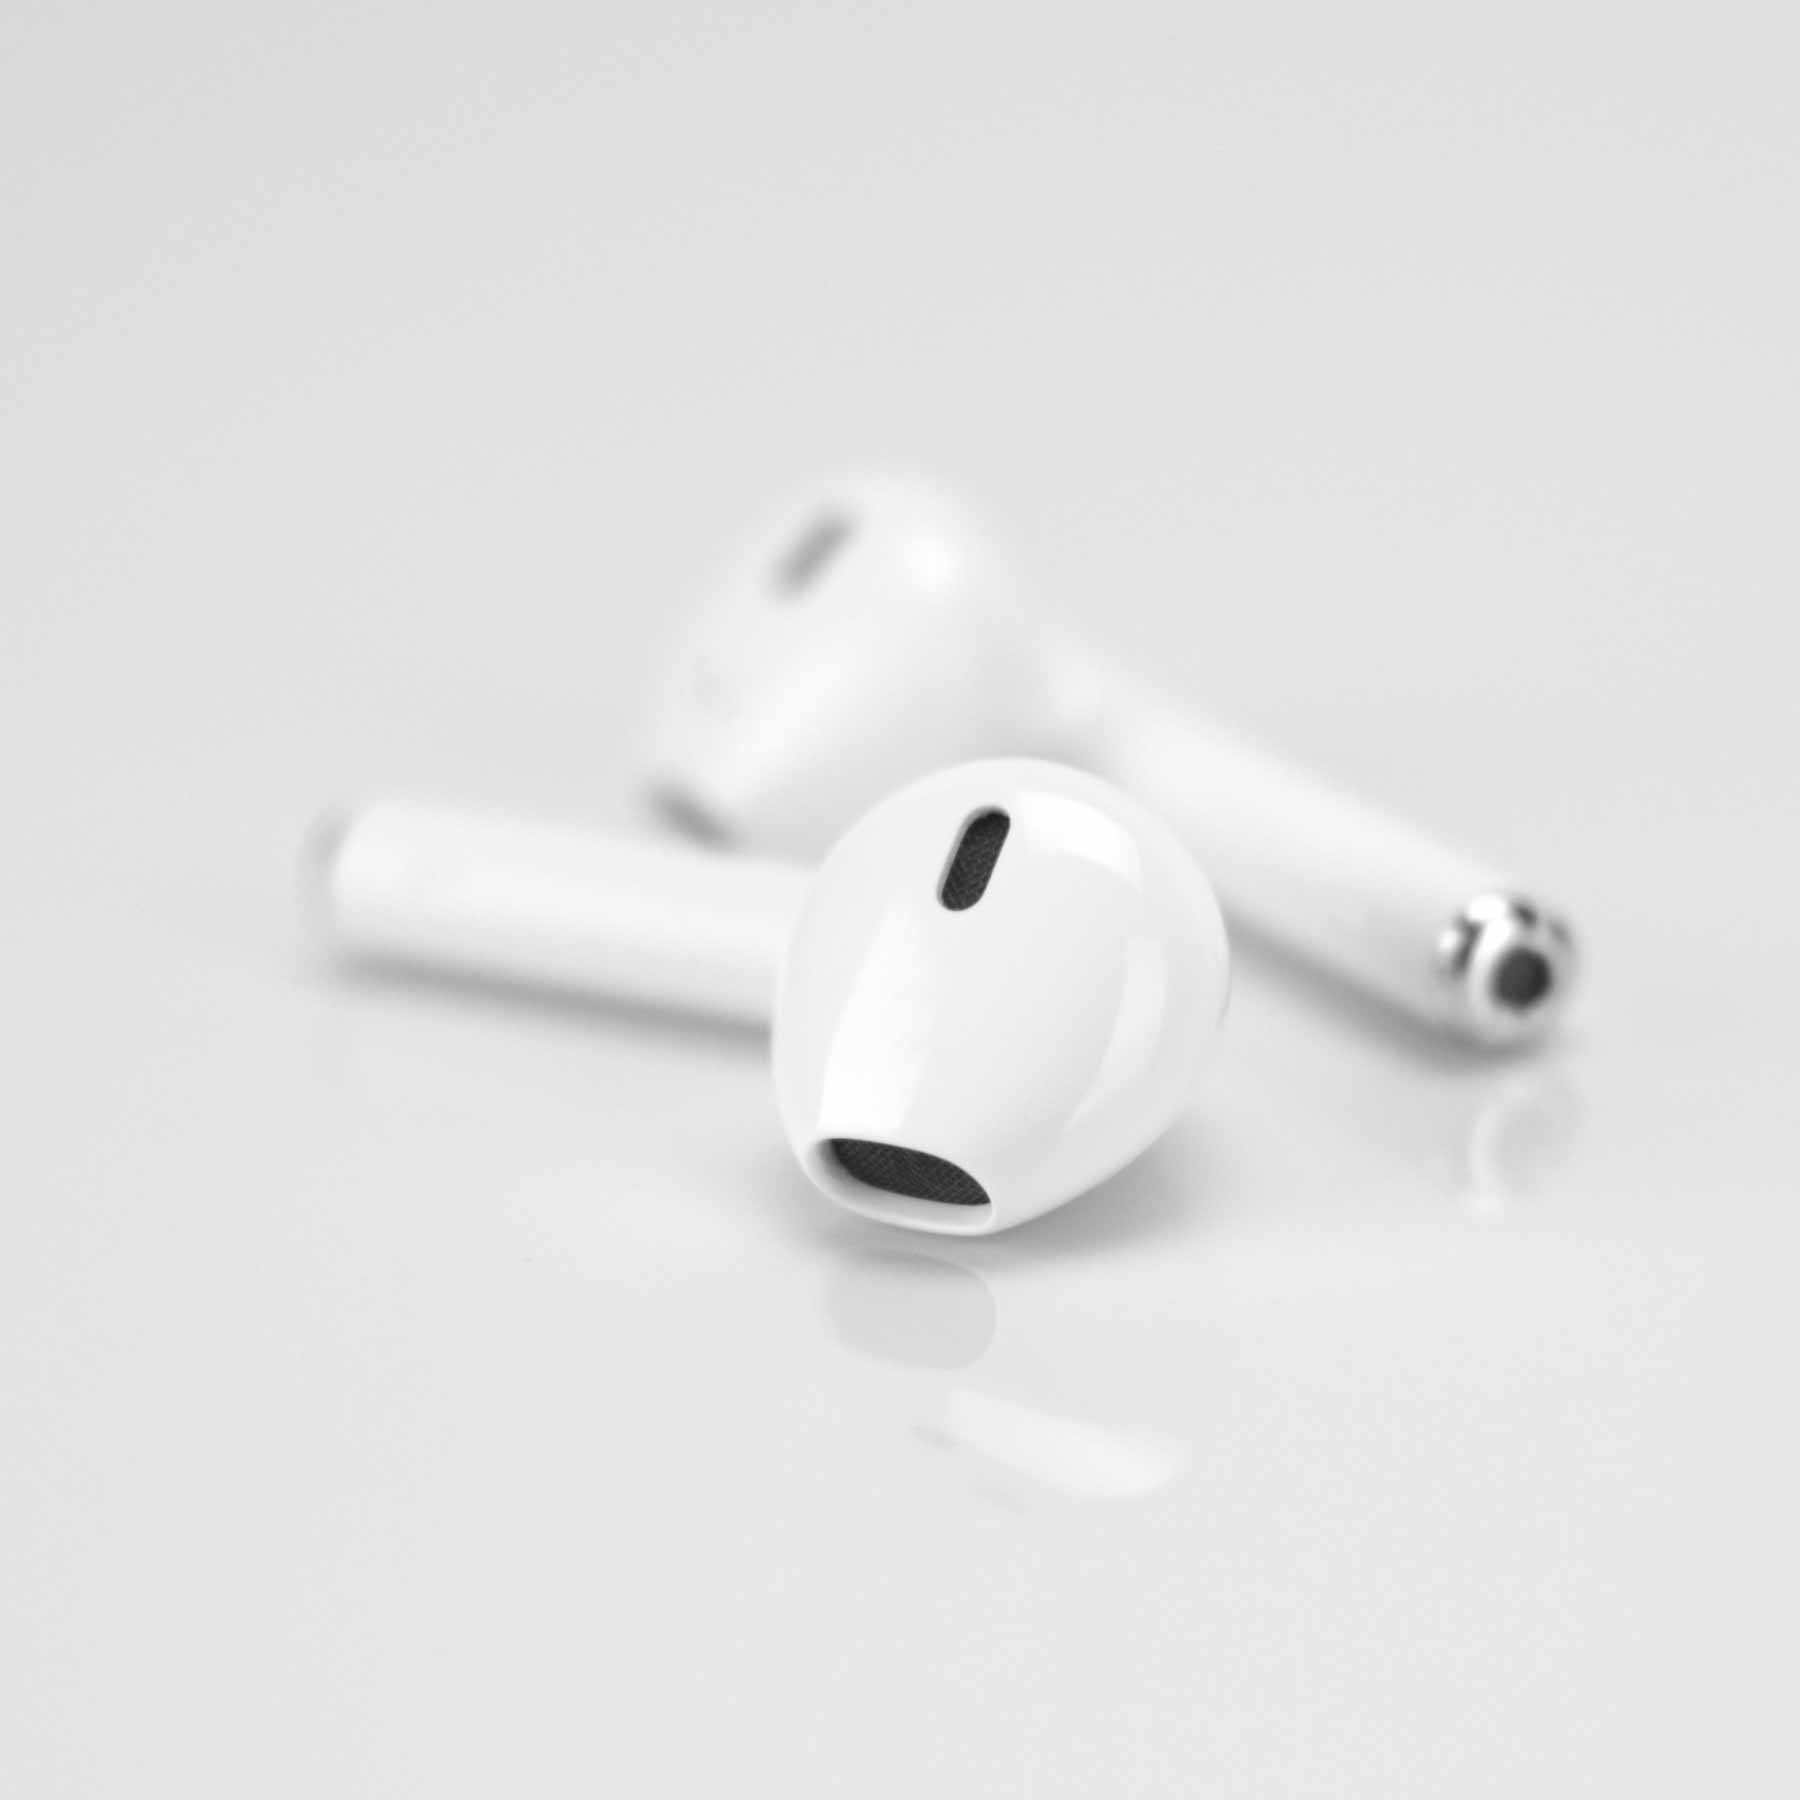 Kopfhörer 4Smarts Kopfhörer – Bluetooth 4smarts /